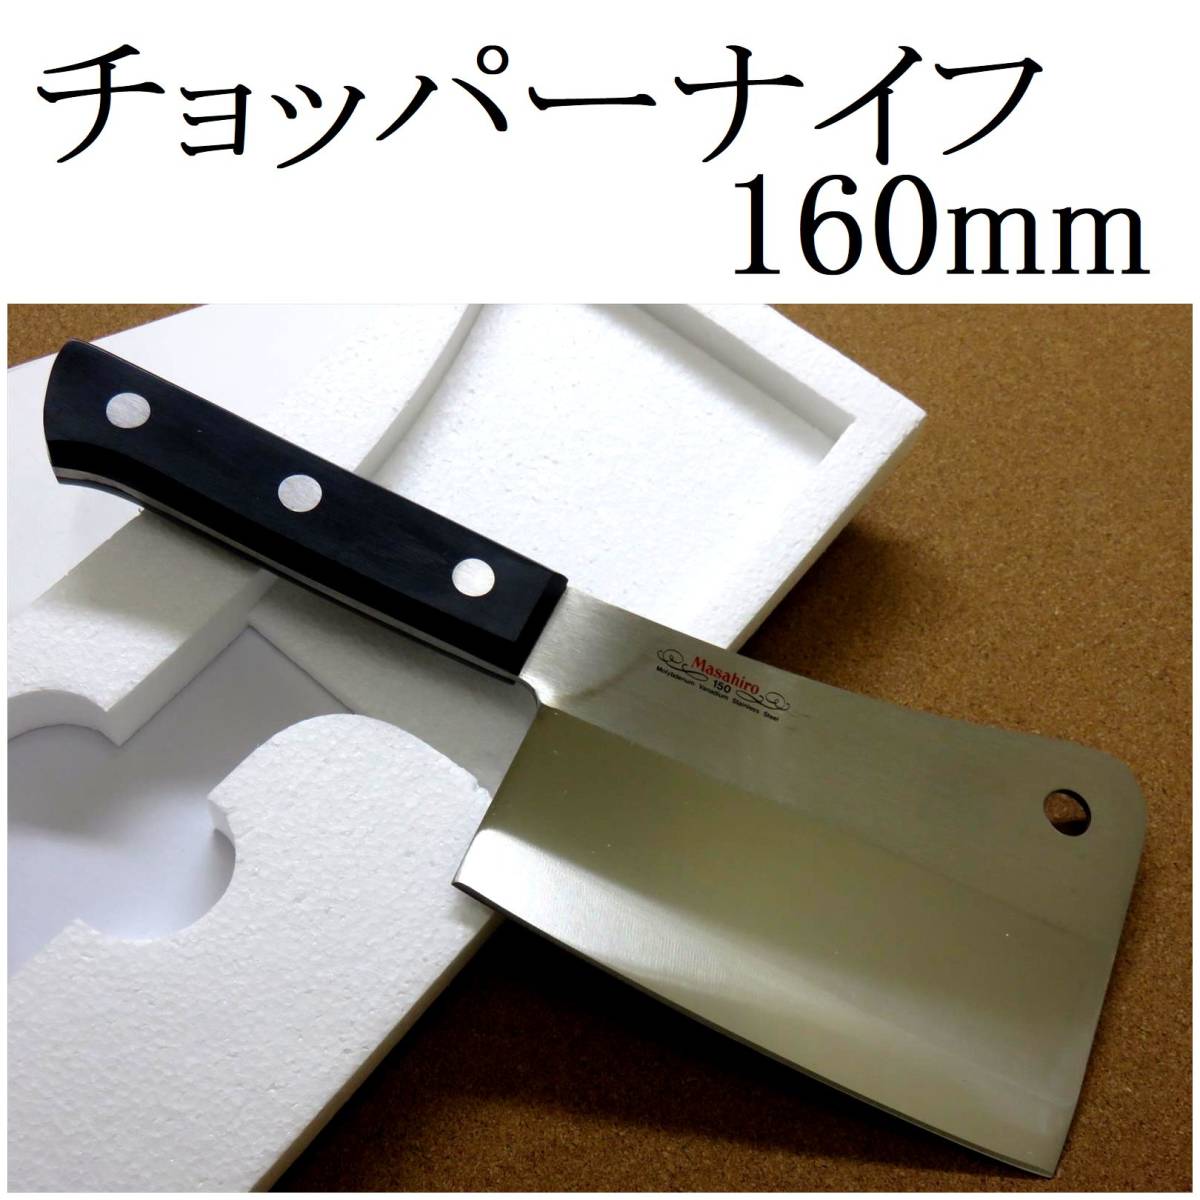 関の刃物 チョッパーナイフ 16cm (160mm) 正広 MV黒合板 モリブデン 大きな肉をナタのように叩き切 両刃包丁 クレバーナイフ 日本製